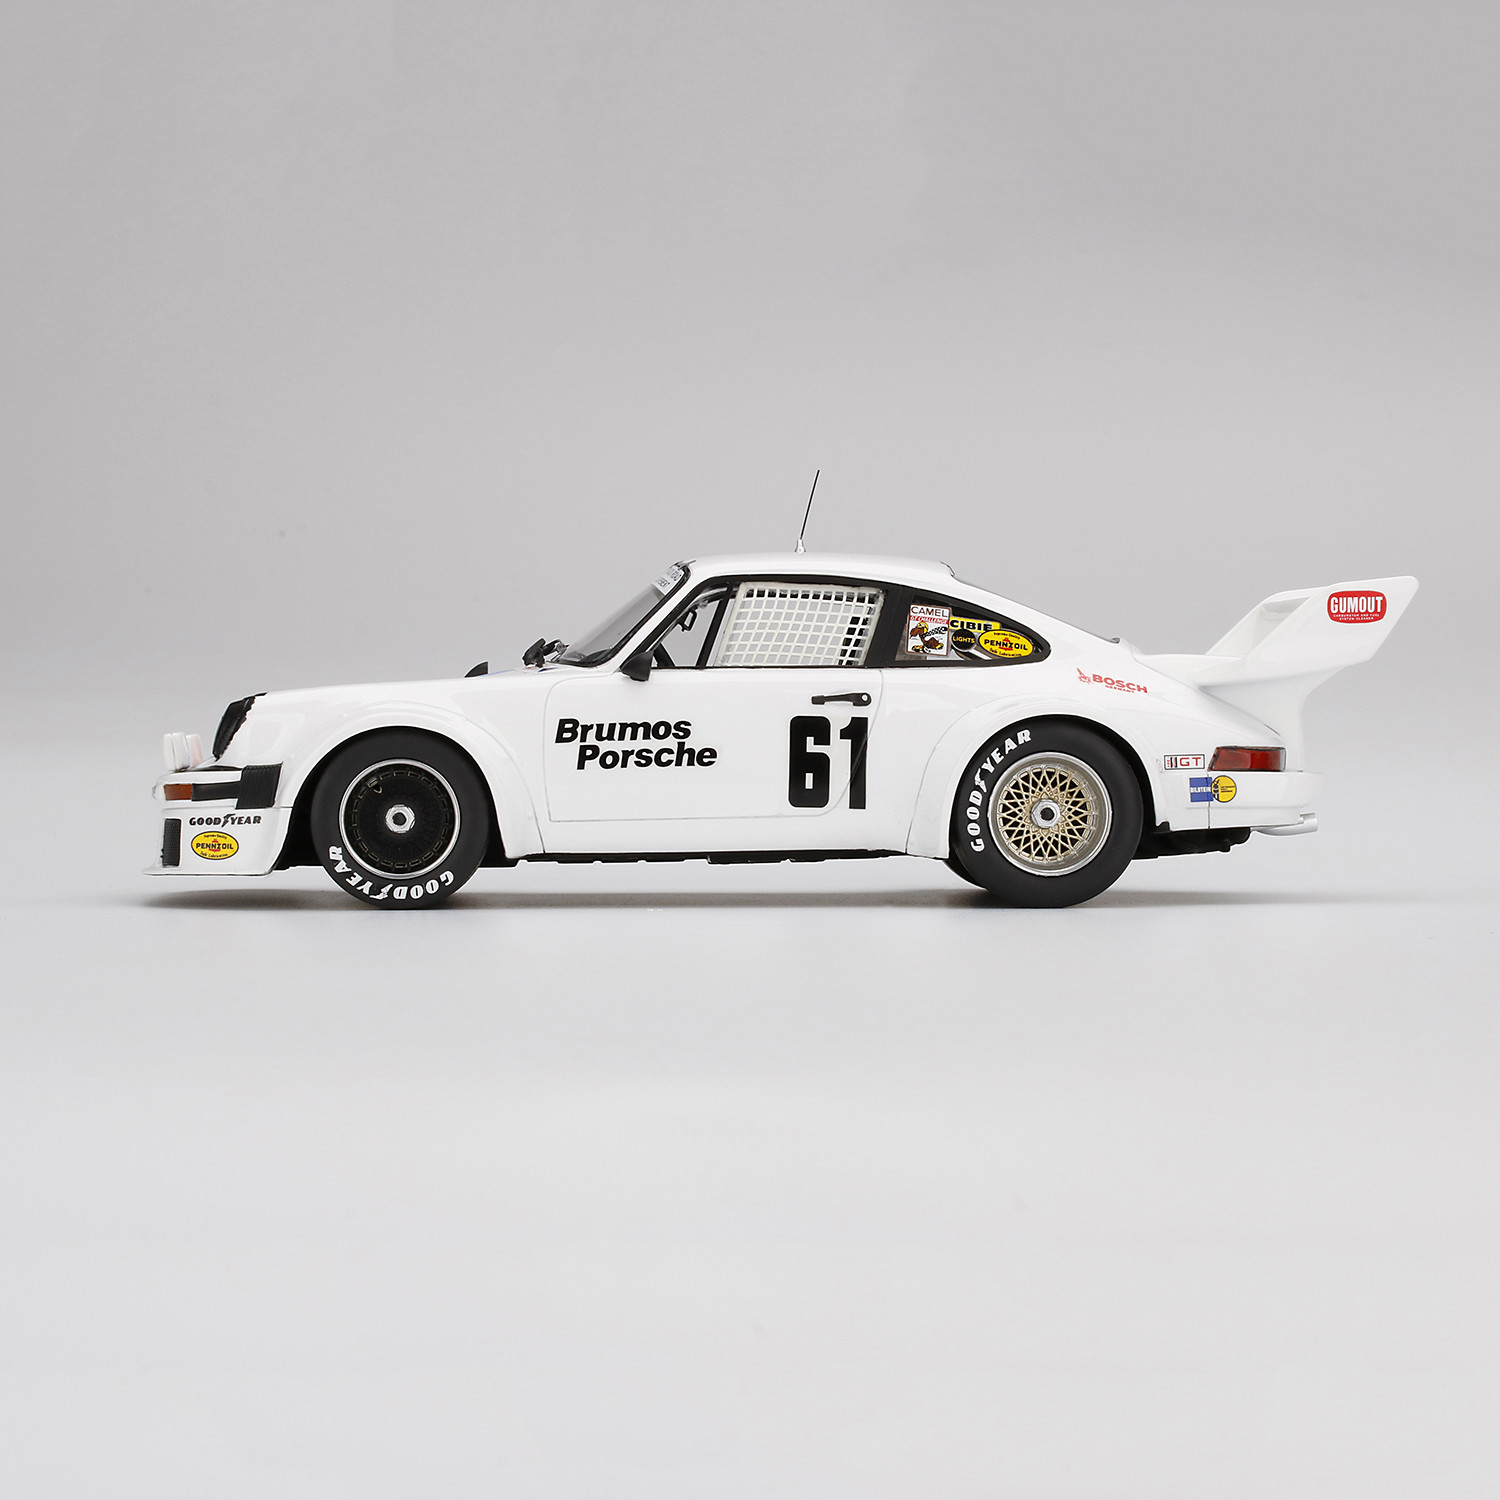 1 18 Porsche 934 5 61 1977 Sebring 12 Hrs 3rd Place Brumos Racing Tsm Touch Of Modern